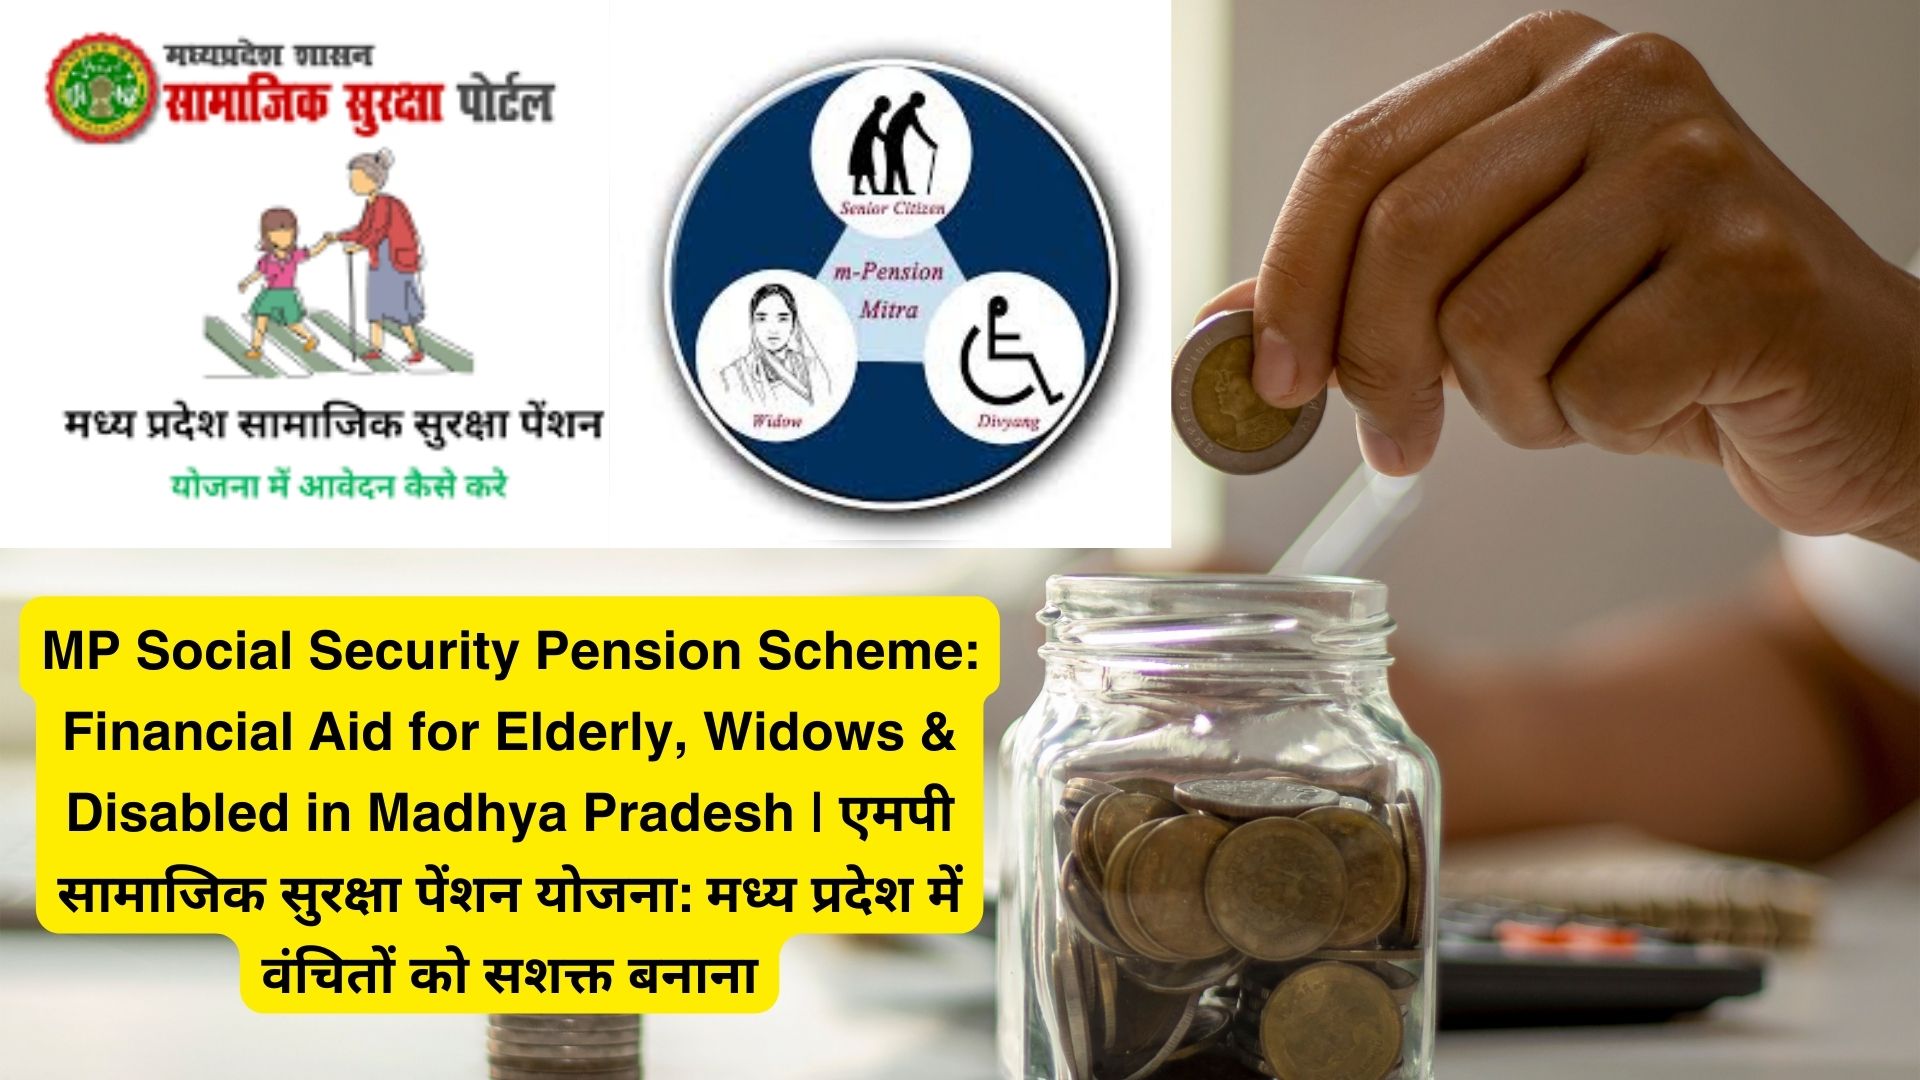 MP Social Security Pension Scheme: Financial Aid for Elderly, Widows & Disabled in Madhya Pradesh | एमपी सामाजिक सुरक्षा पेंशन योजना: मध्य प्रदेश में वंचितों को सशक्त बनाना